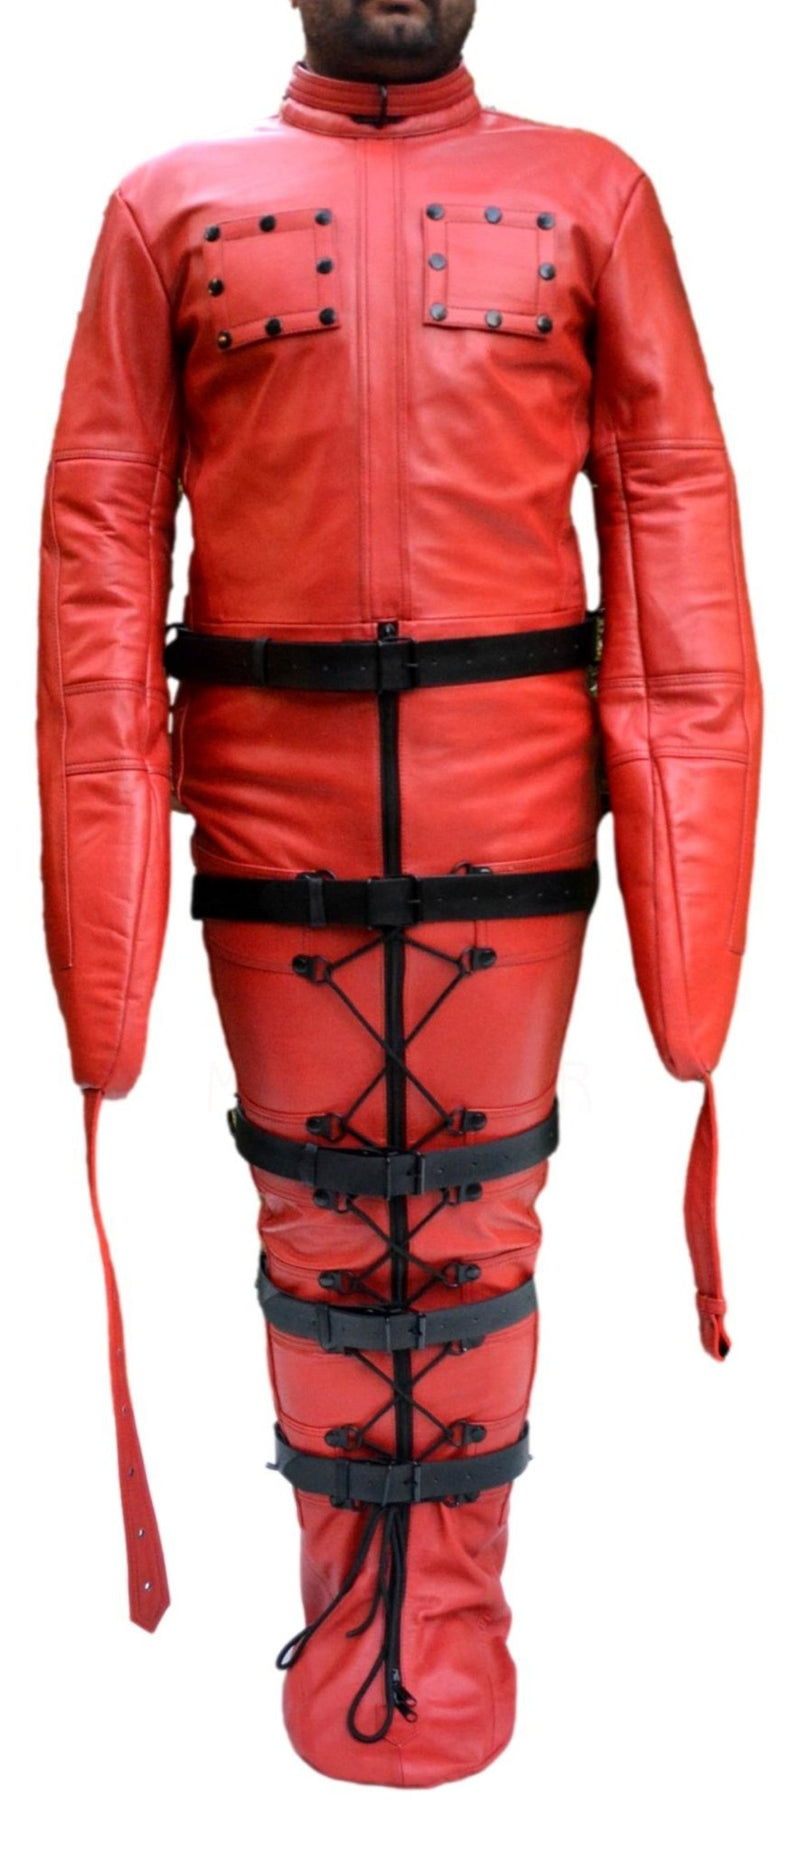 Leather Sleep Sack,Restraint,Bondage,Leather SleepSack Red - MRI Leathers